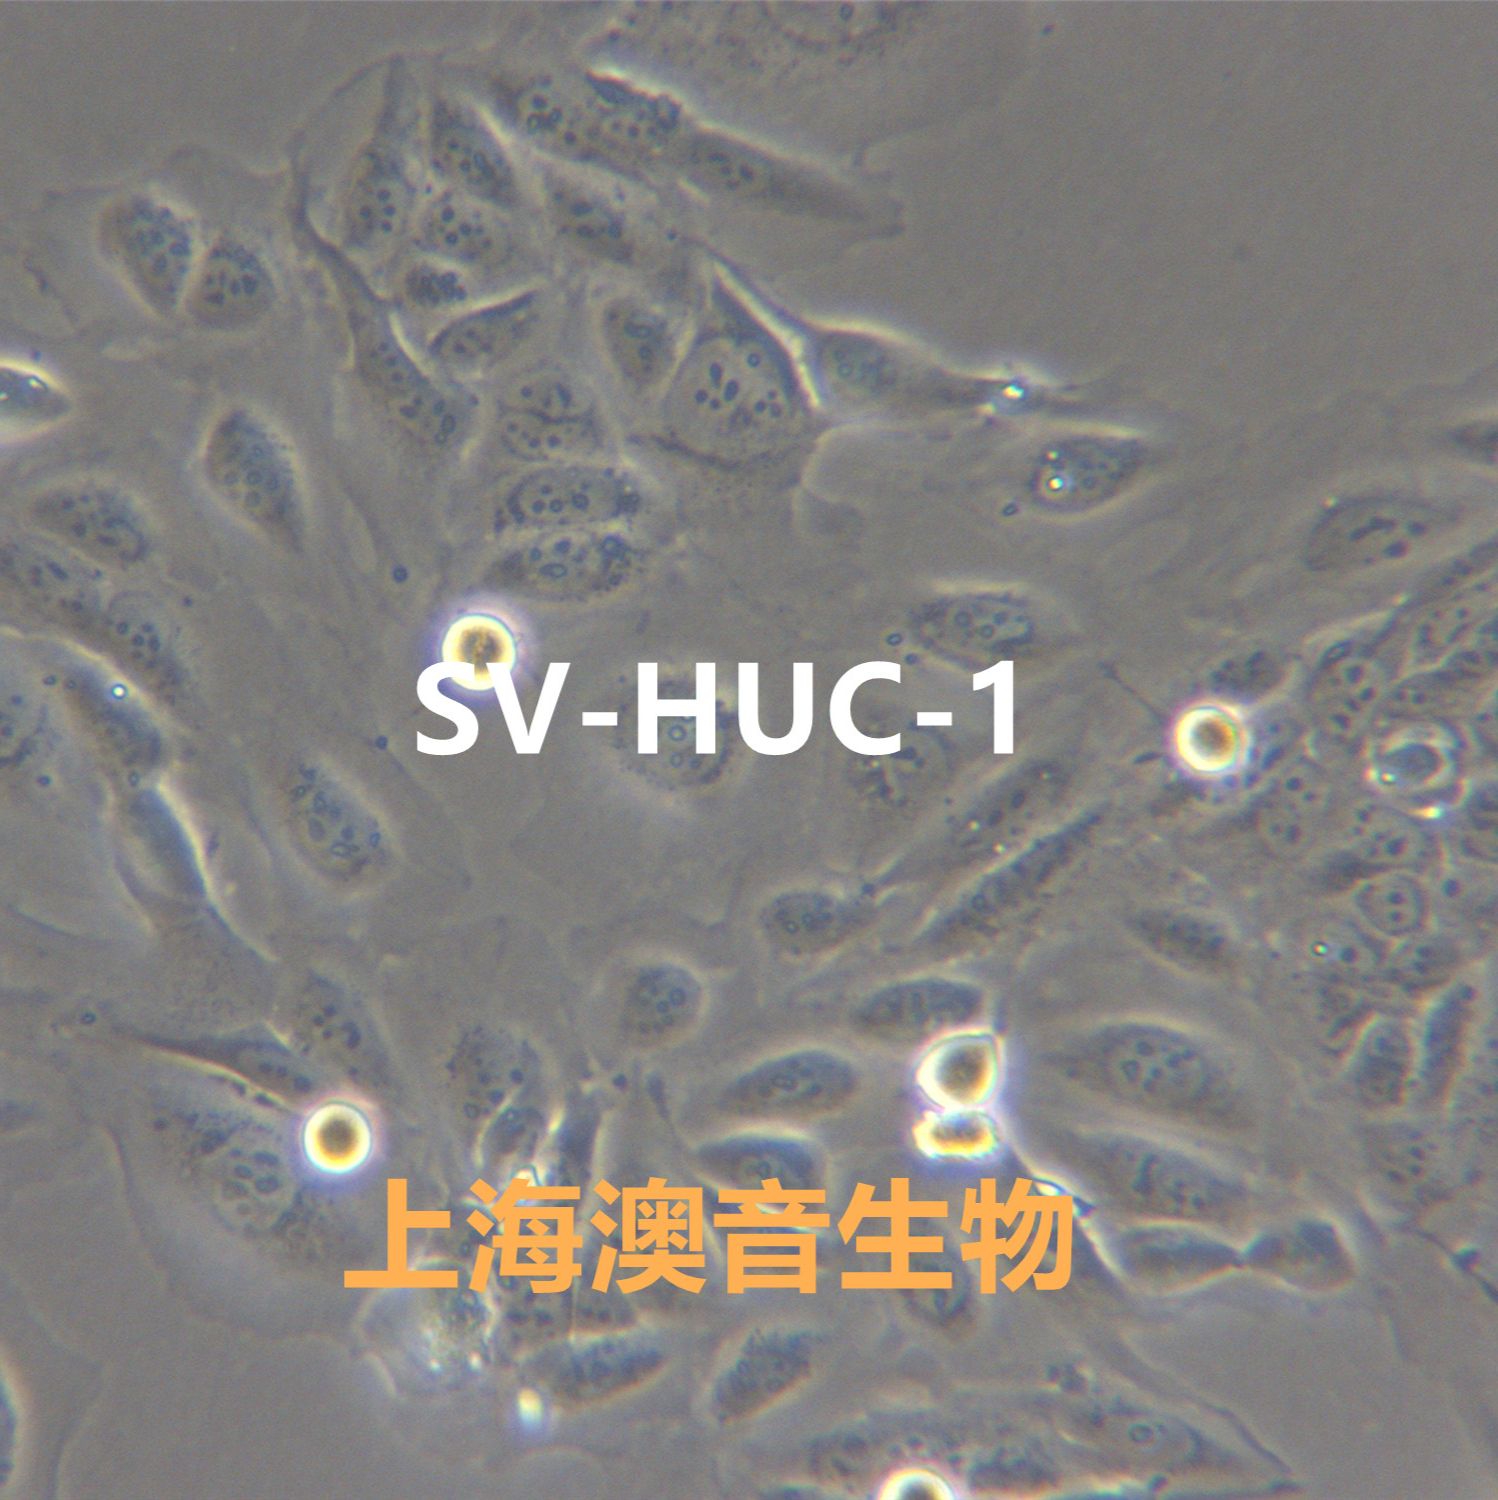 SV-HUC-1[HUC-1; SV-HUC; SVHUC]输尿管上皮细胞